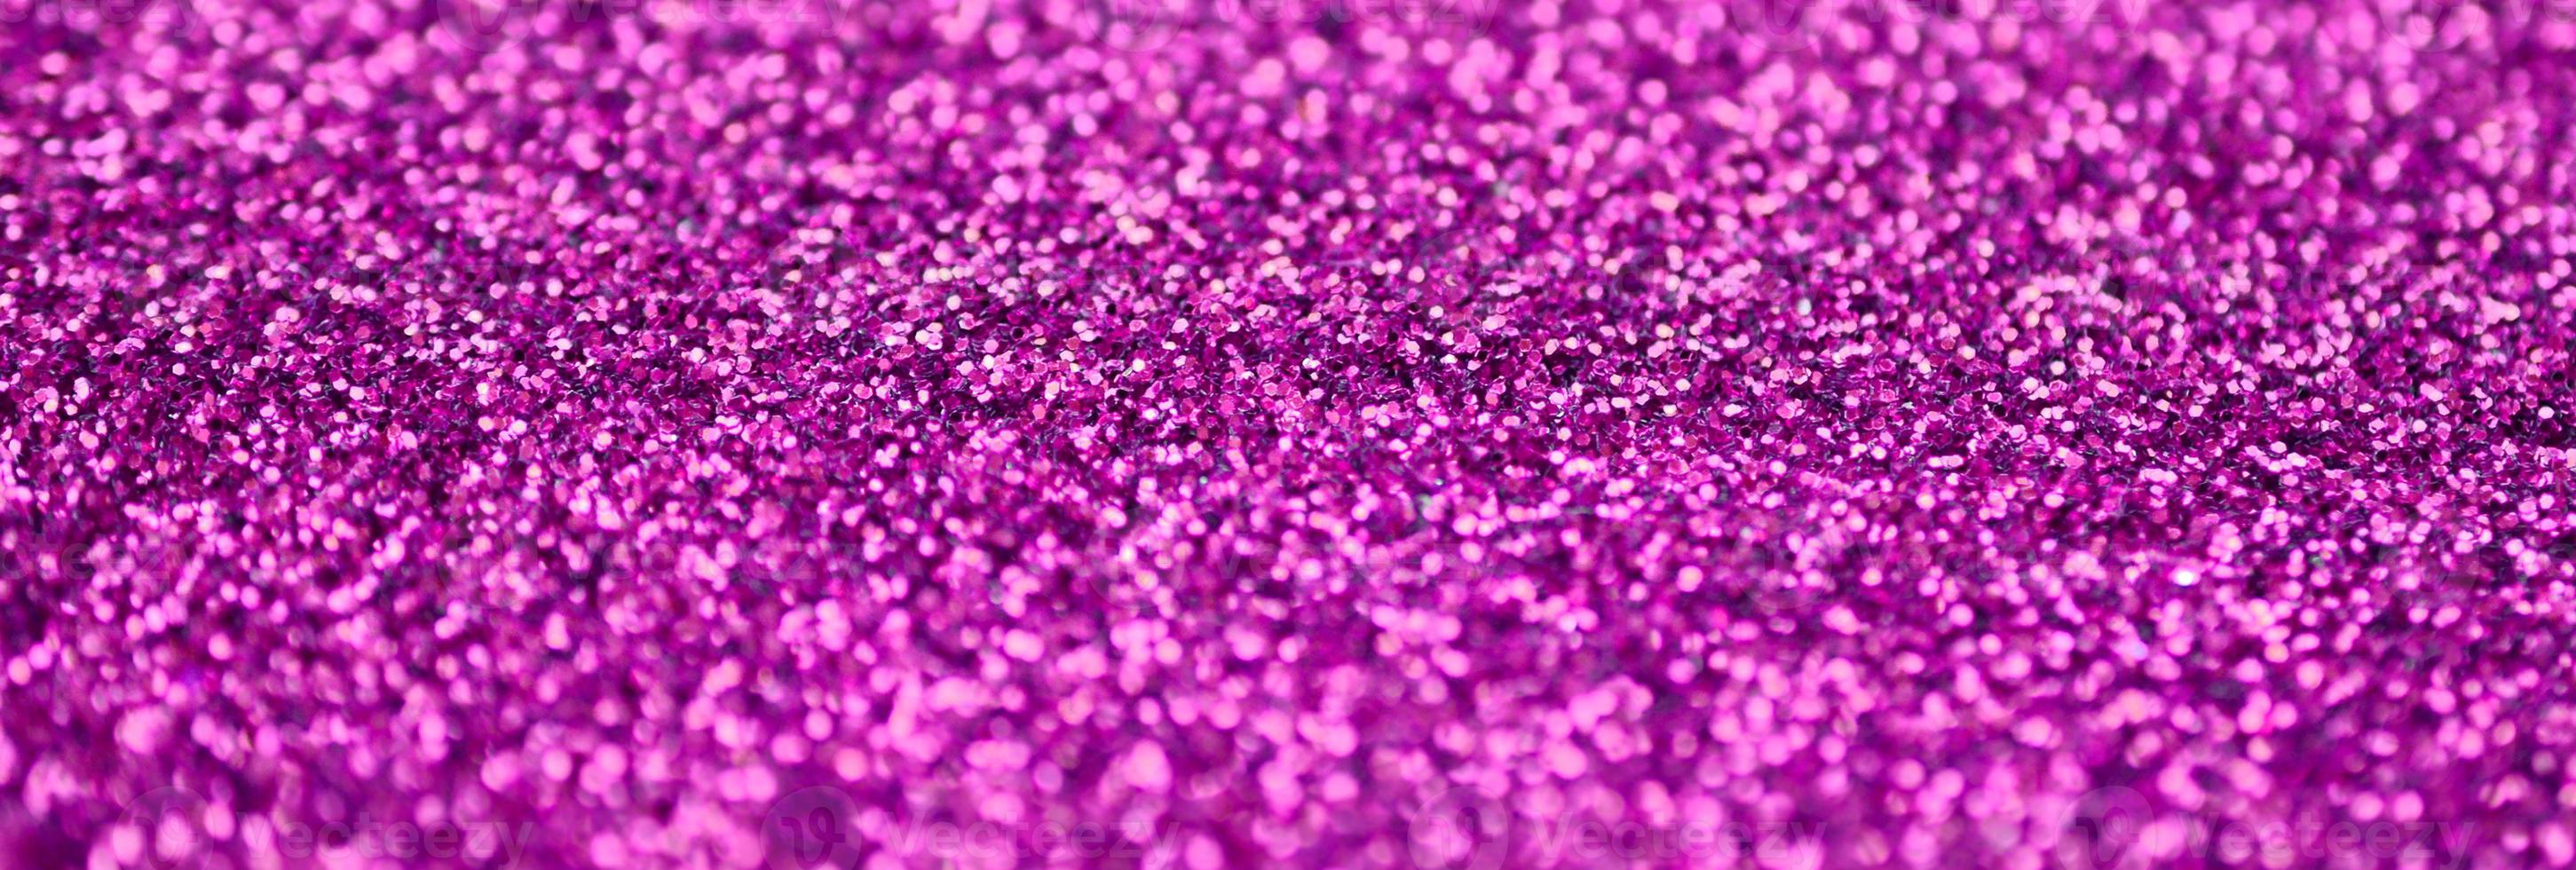 lentejuelas decorativas rosas. imagen de fondo con luces bokeh brillantes de elementos pequeños foto